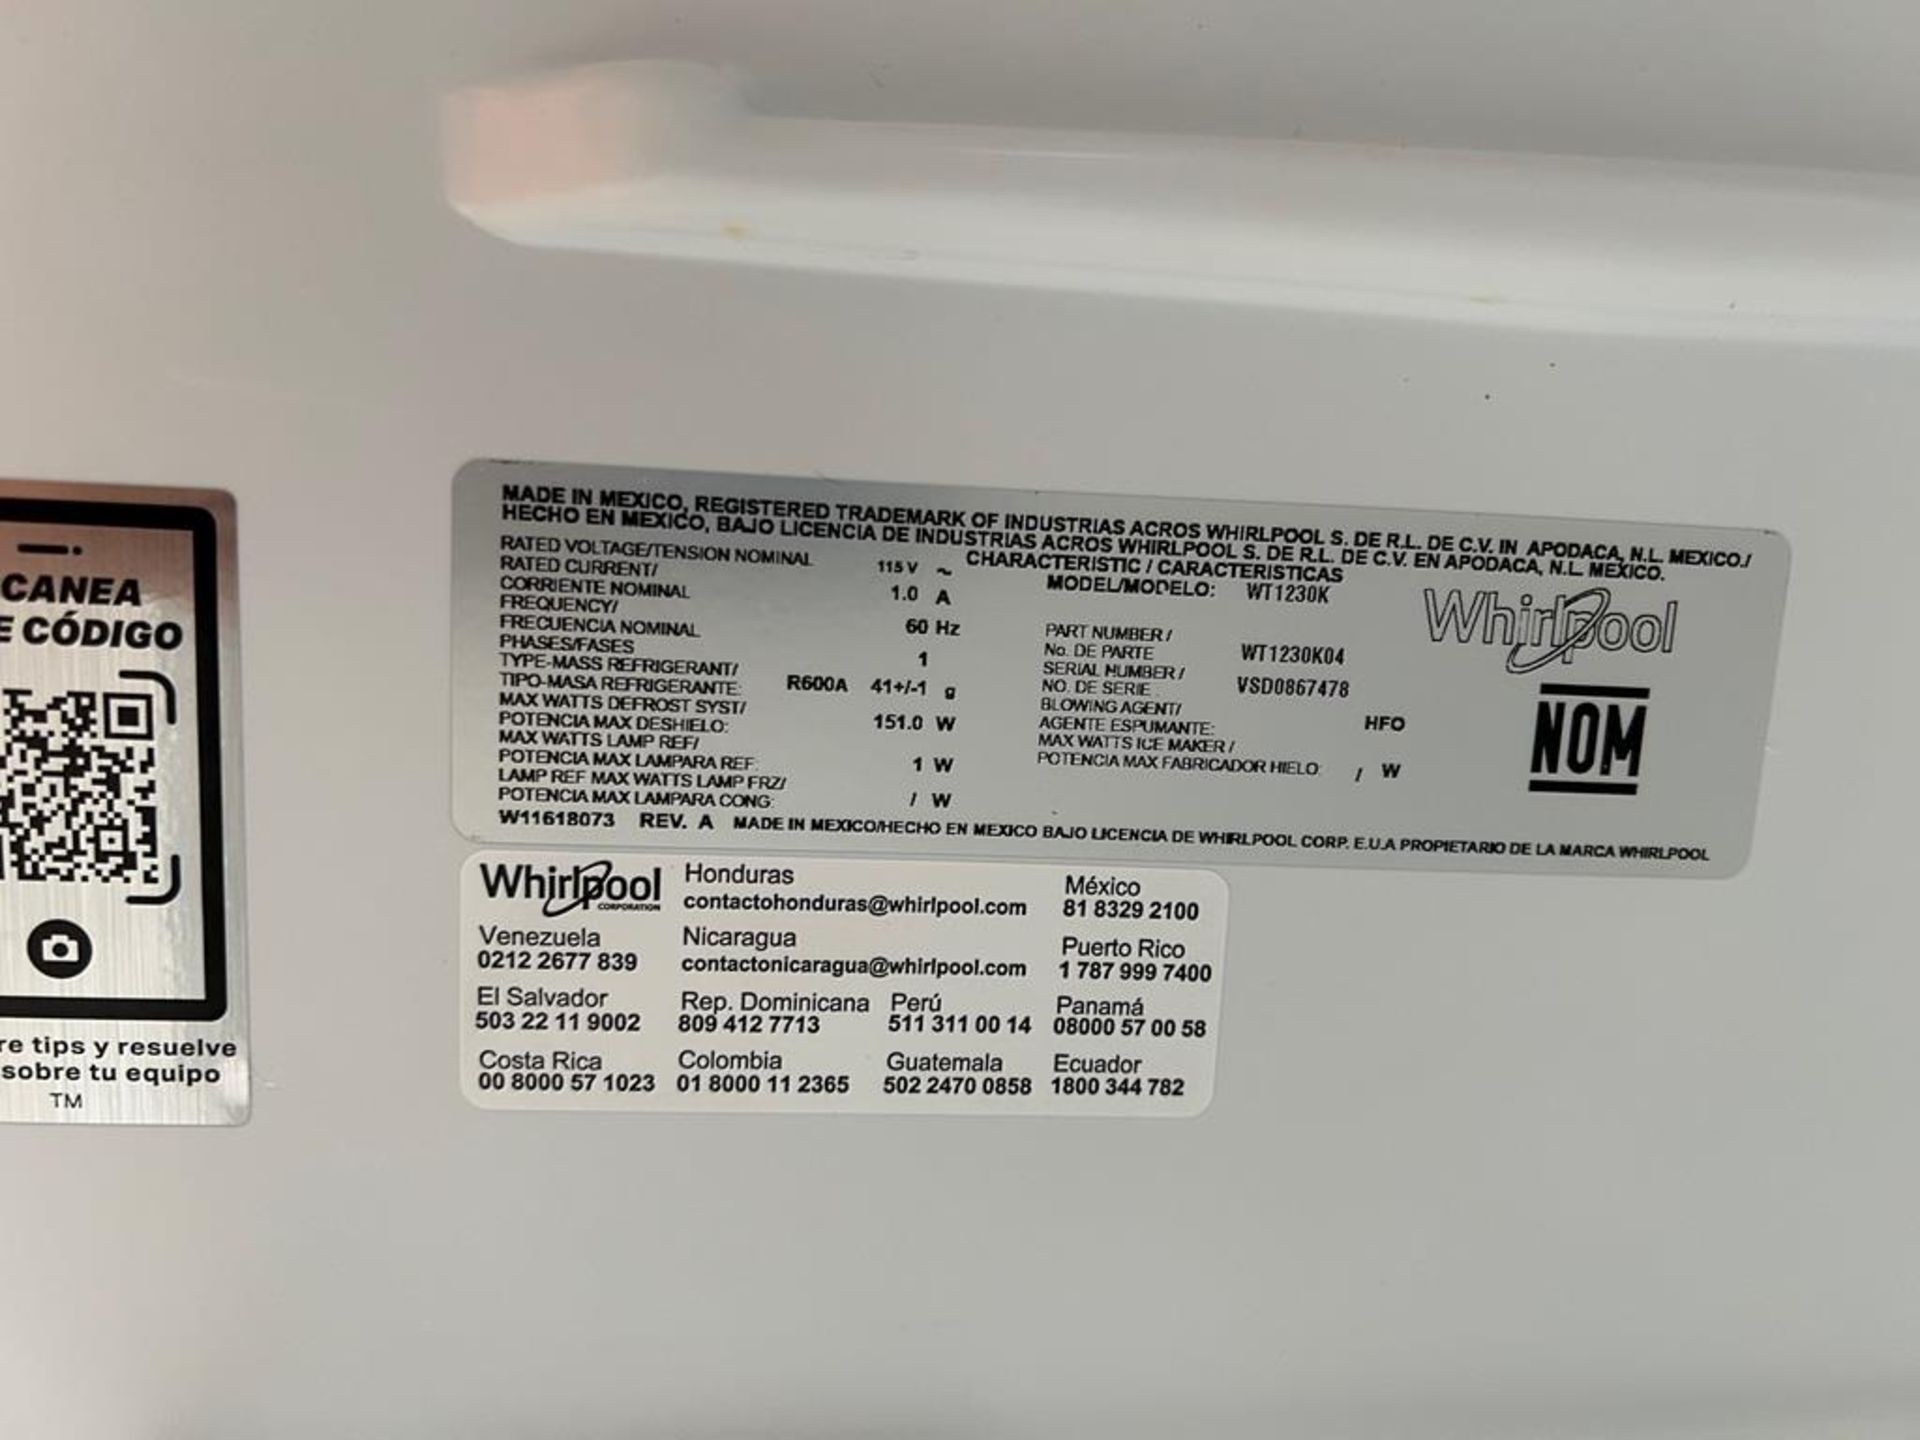 Lote de 2 refrigeradores contiene: 1 Refrigerador Marca WHIRPOOL, Modelo WT1230K, Serie 91306, Colo - Image 9 of 17